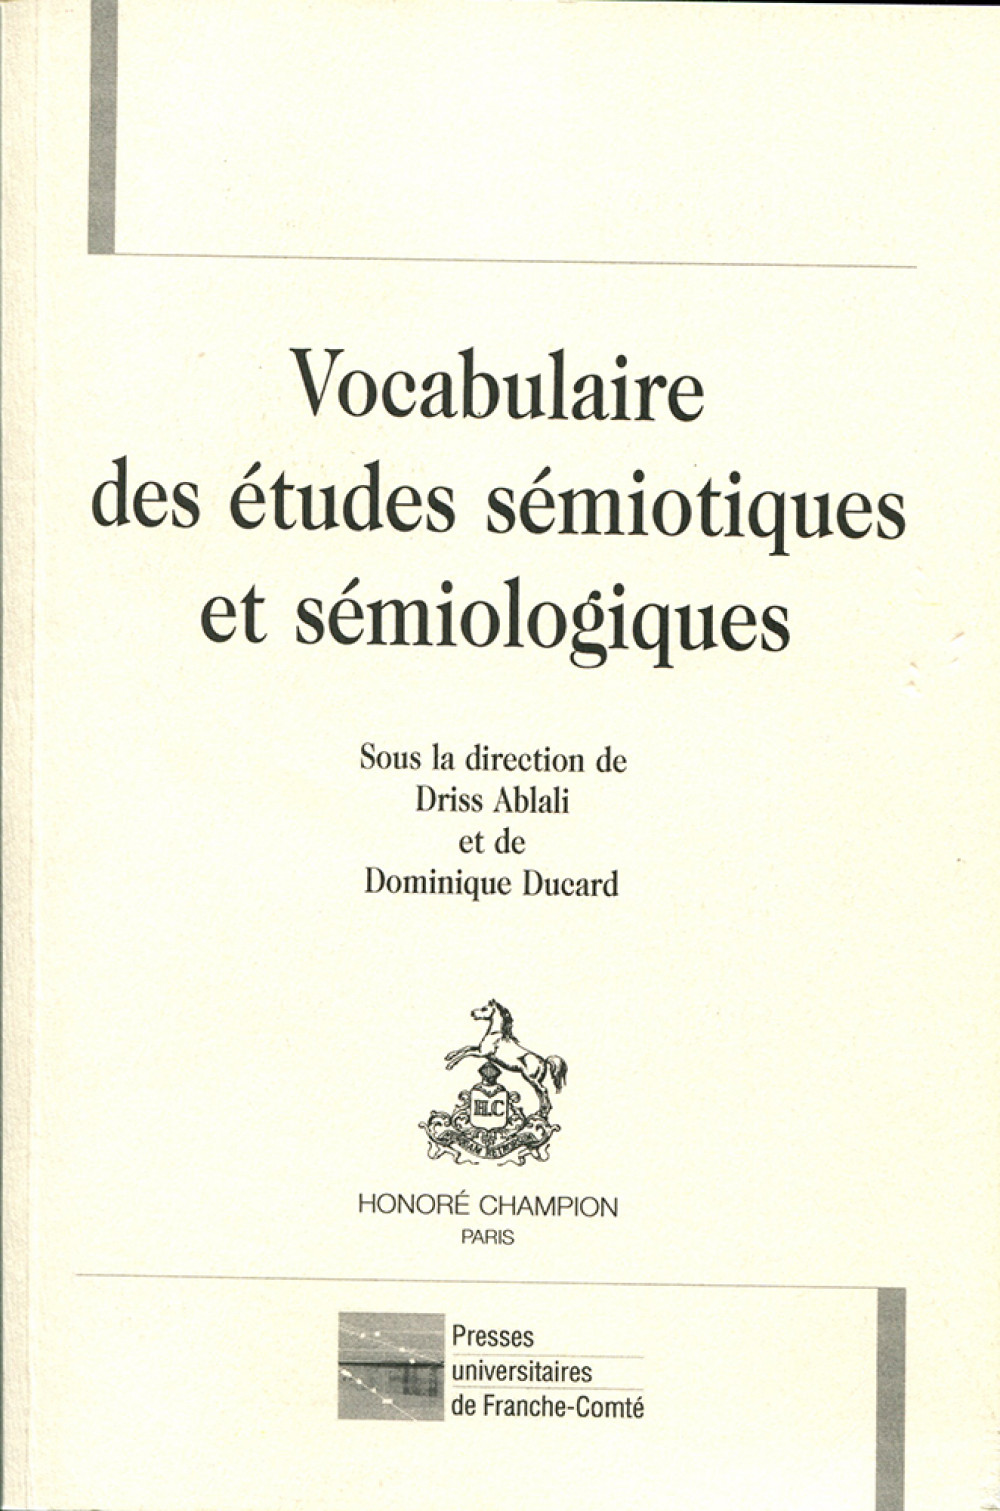 Vocabulaire des études sémiotiques et sémiologiques